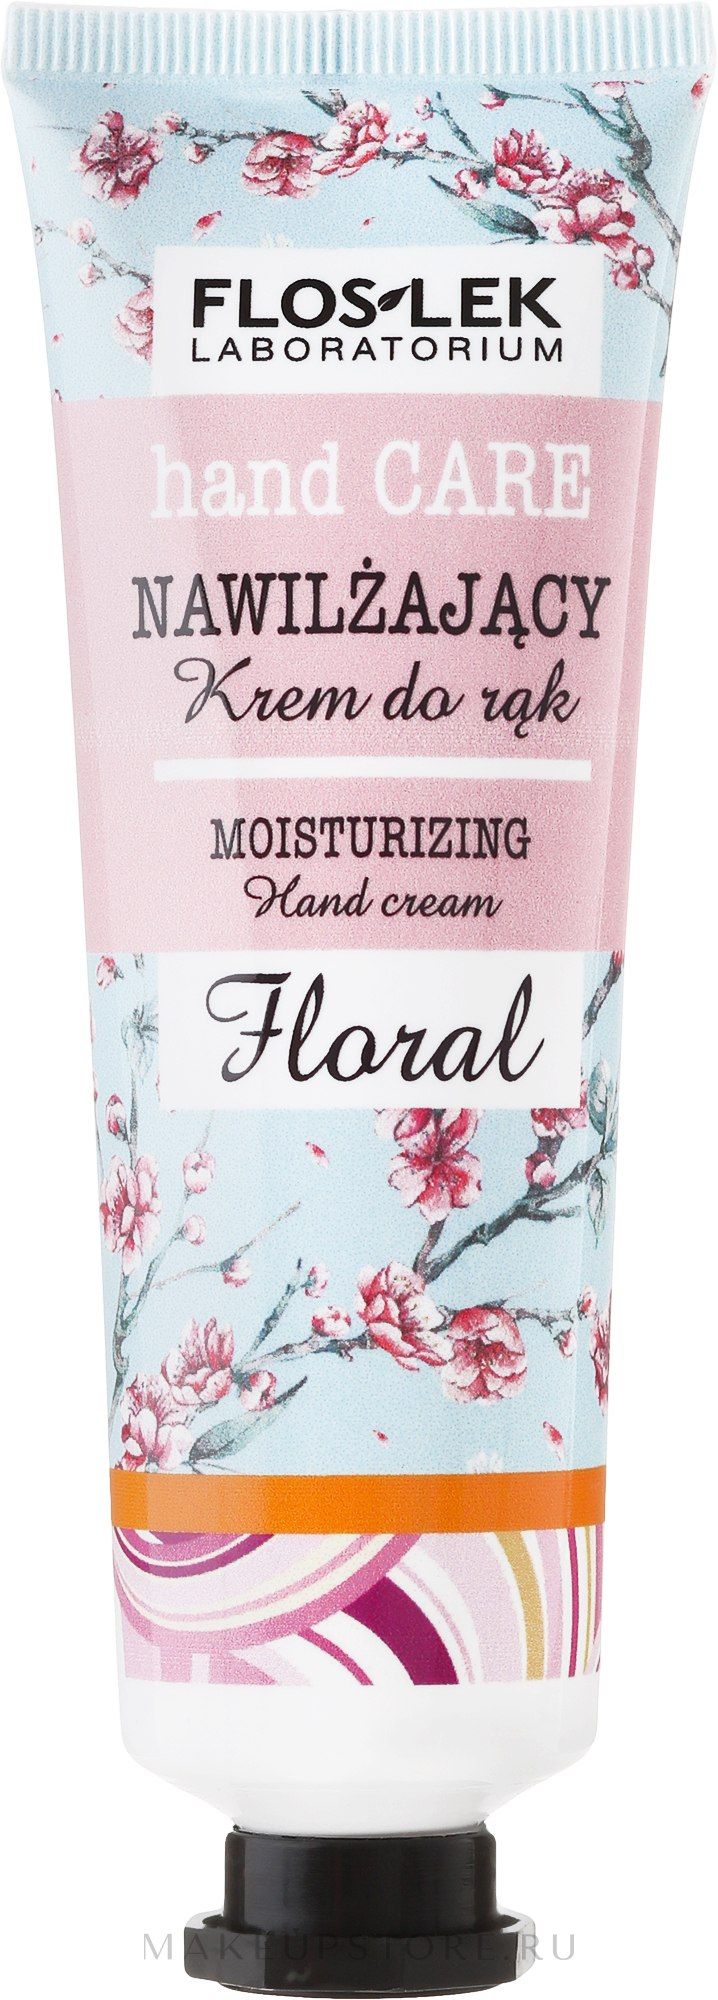 Крем для рук увлажняющий Цветочный LABORATORIUM hand CARE MOISTURIZING Hand cream Floral, Floslek 50 мл